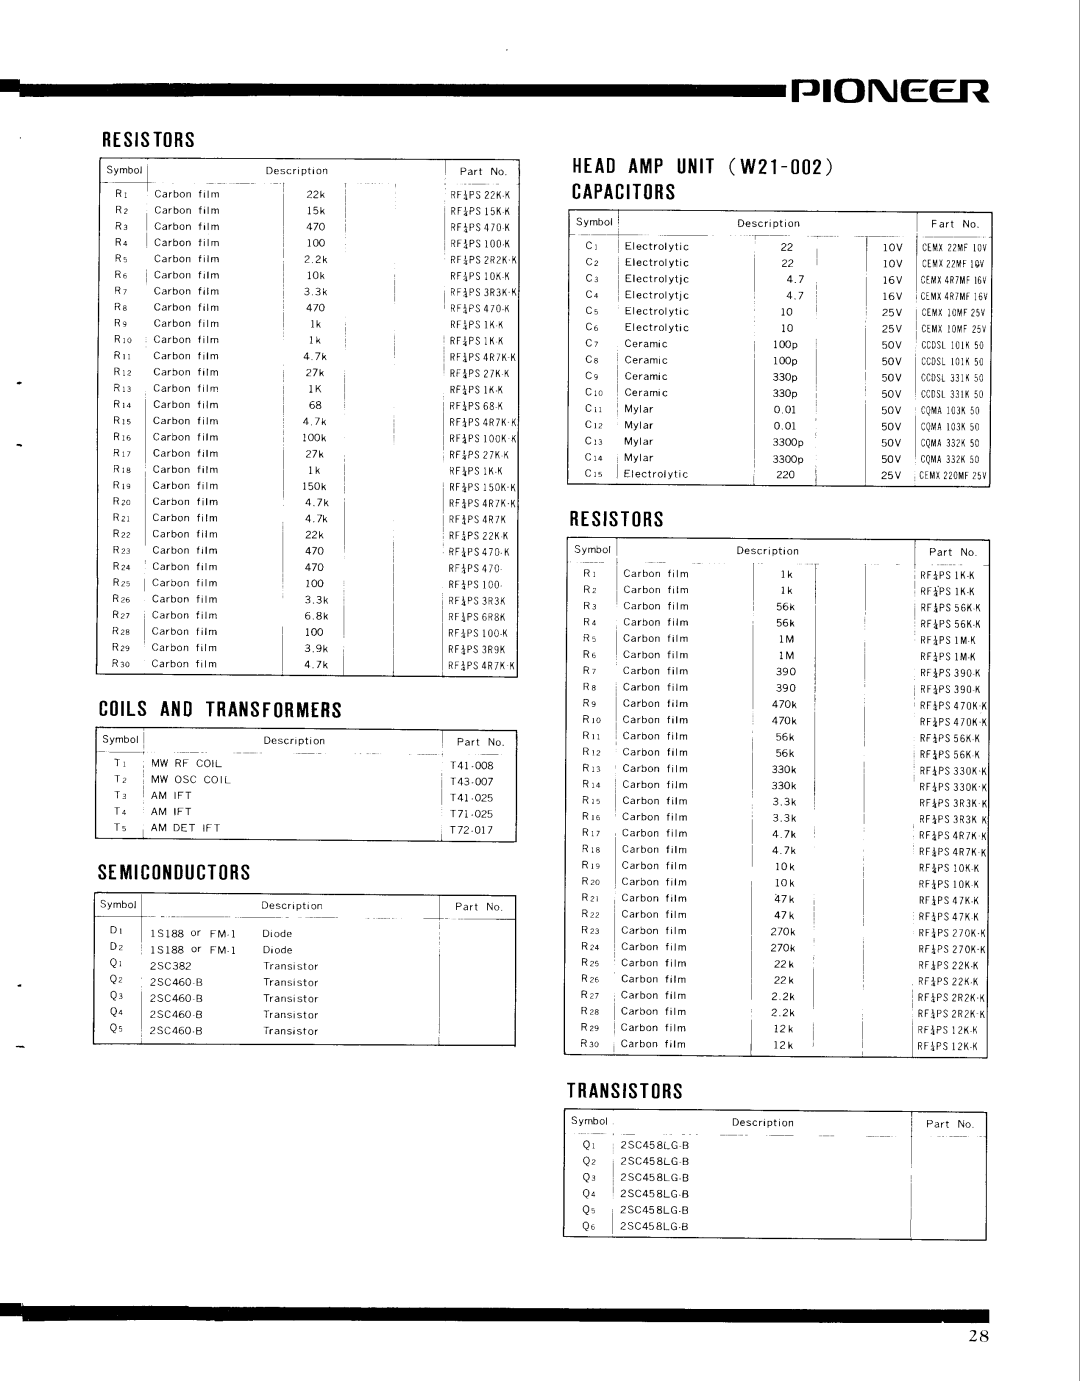 Pioneer SX-9000 Tjioneer, st Mtc0ilDUcT0Rs, RESISTtRS, HEADAMPUlllT W2l- CAPACITlRS, Ct|ILSANITRAISFRMtRS, Transistrs 